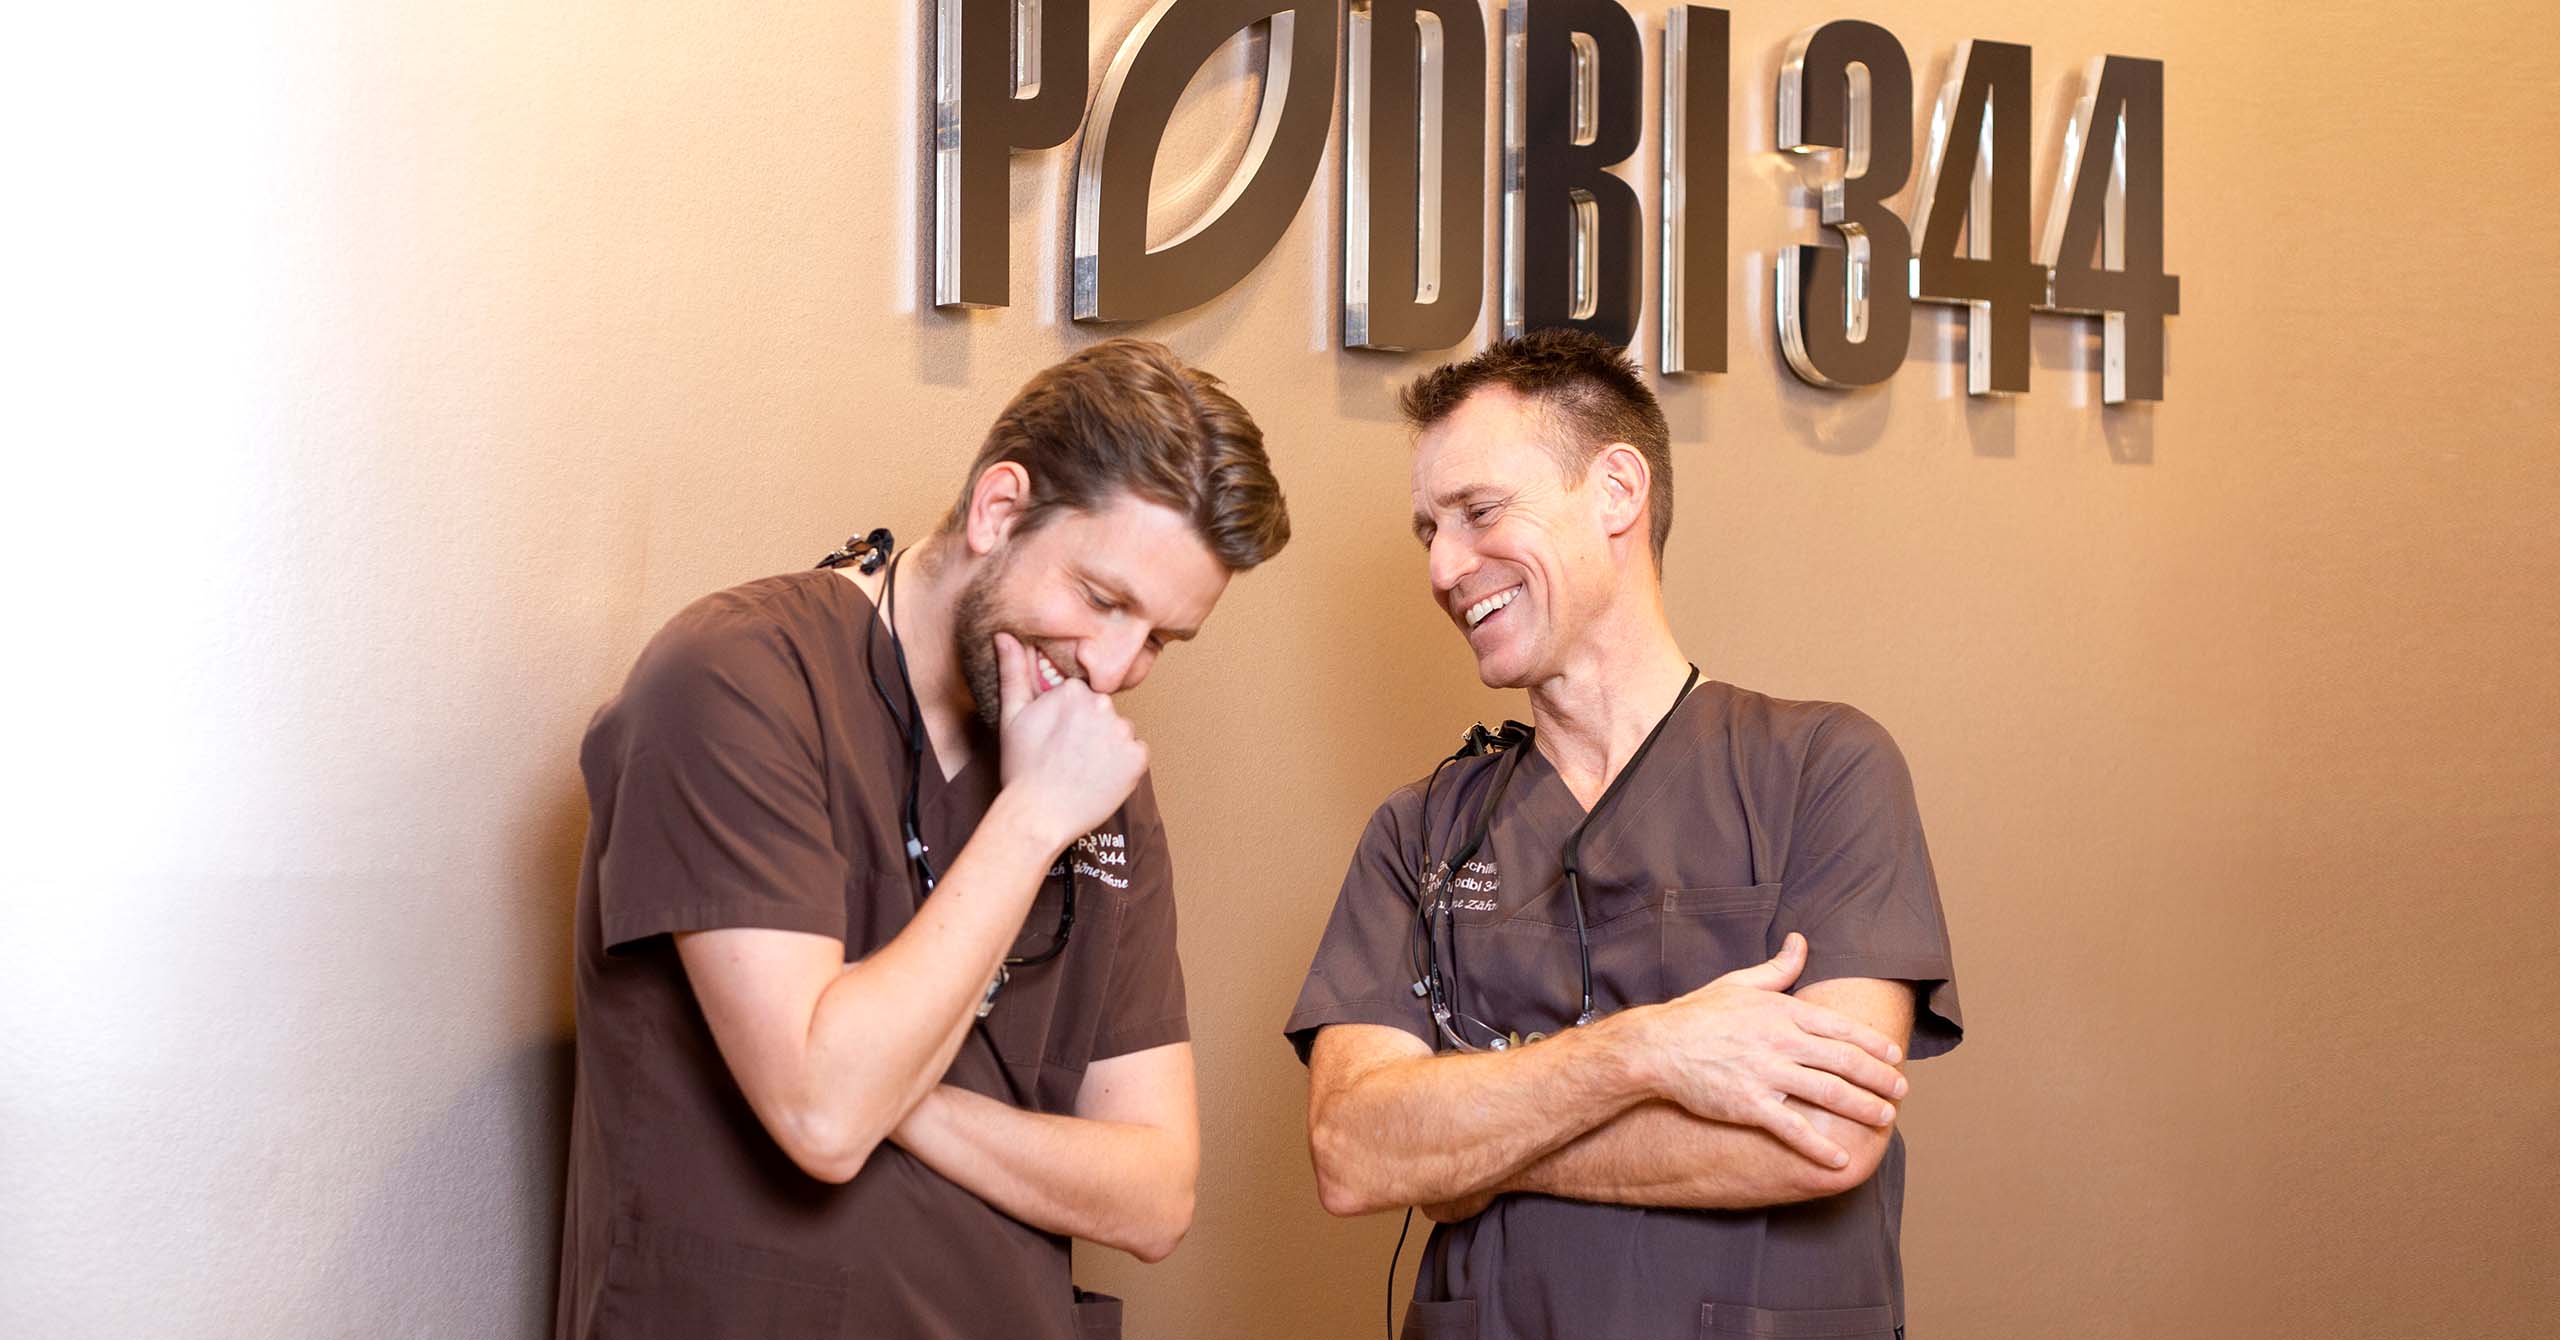 Zahnärzte PODBI344 in Hannover – Ihr Team für gesunde und schöne Zähne